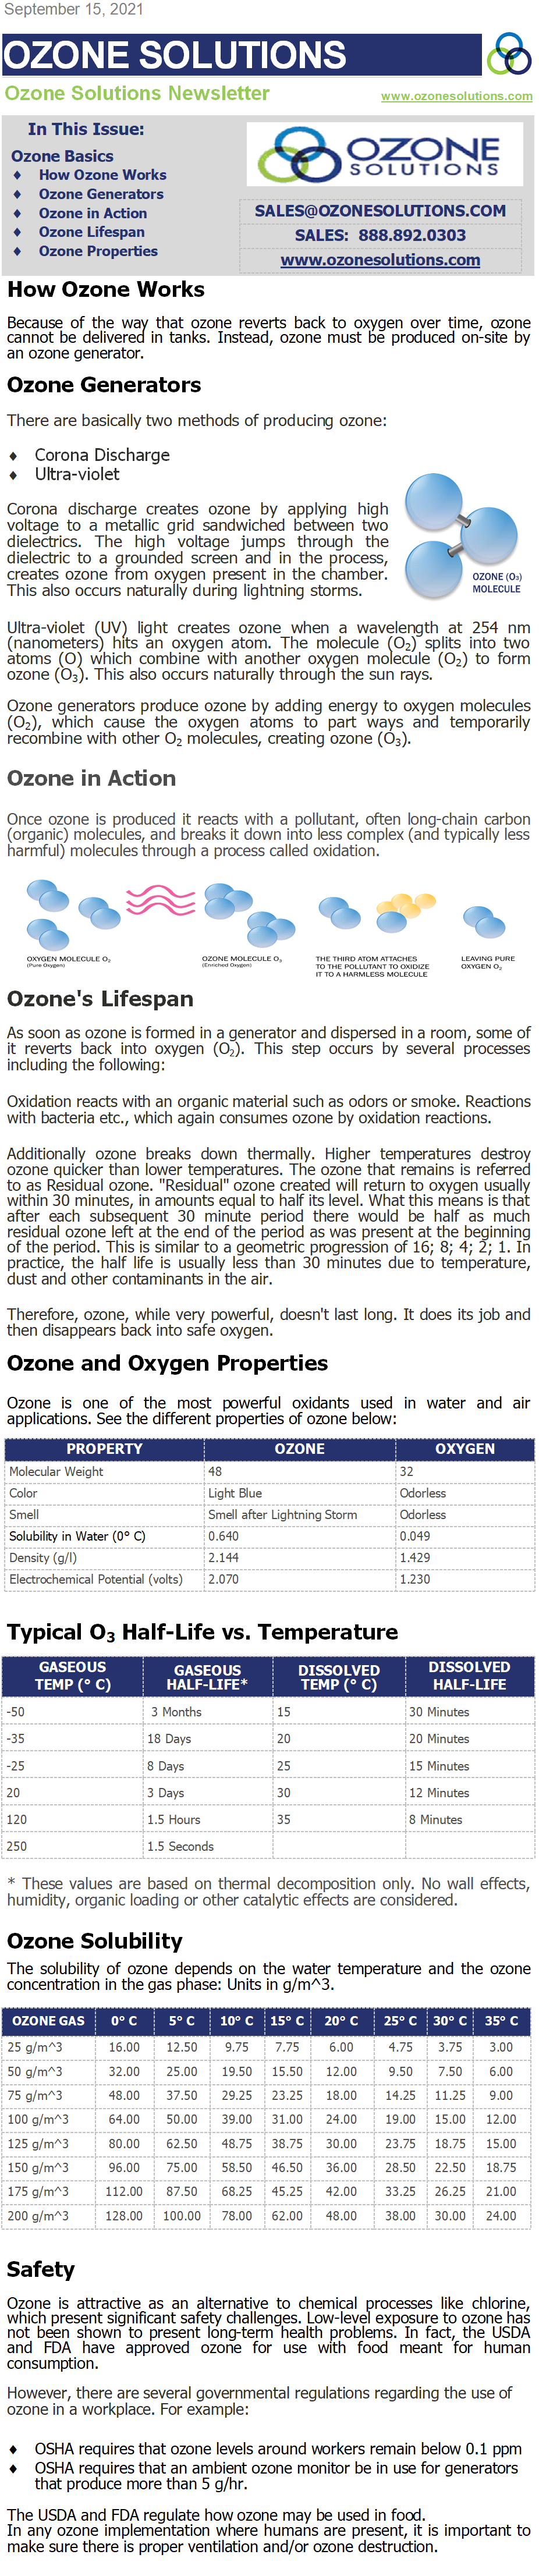 Ozone & Ozone Properties